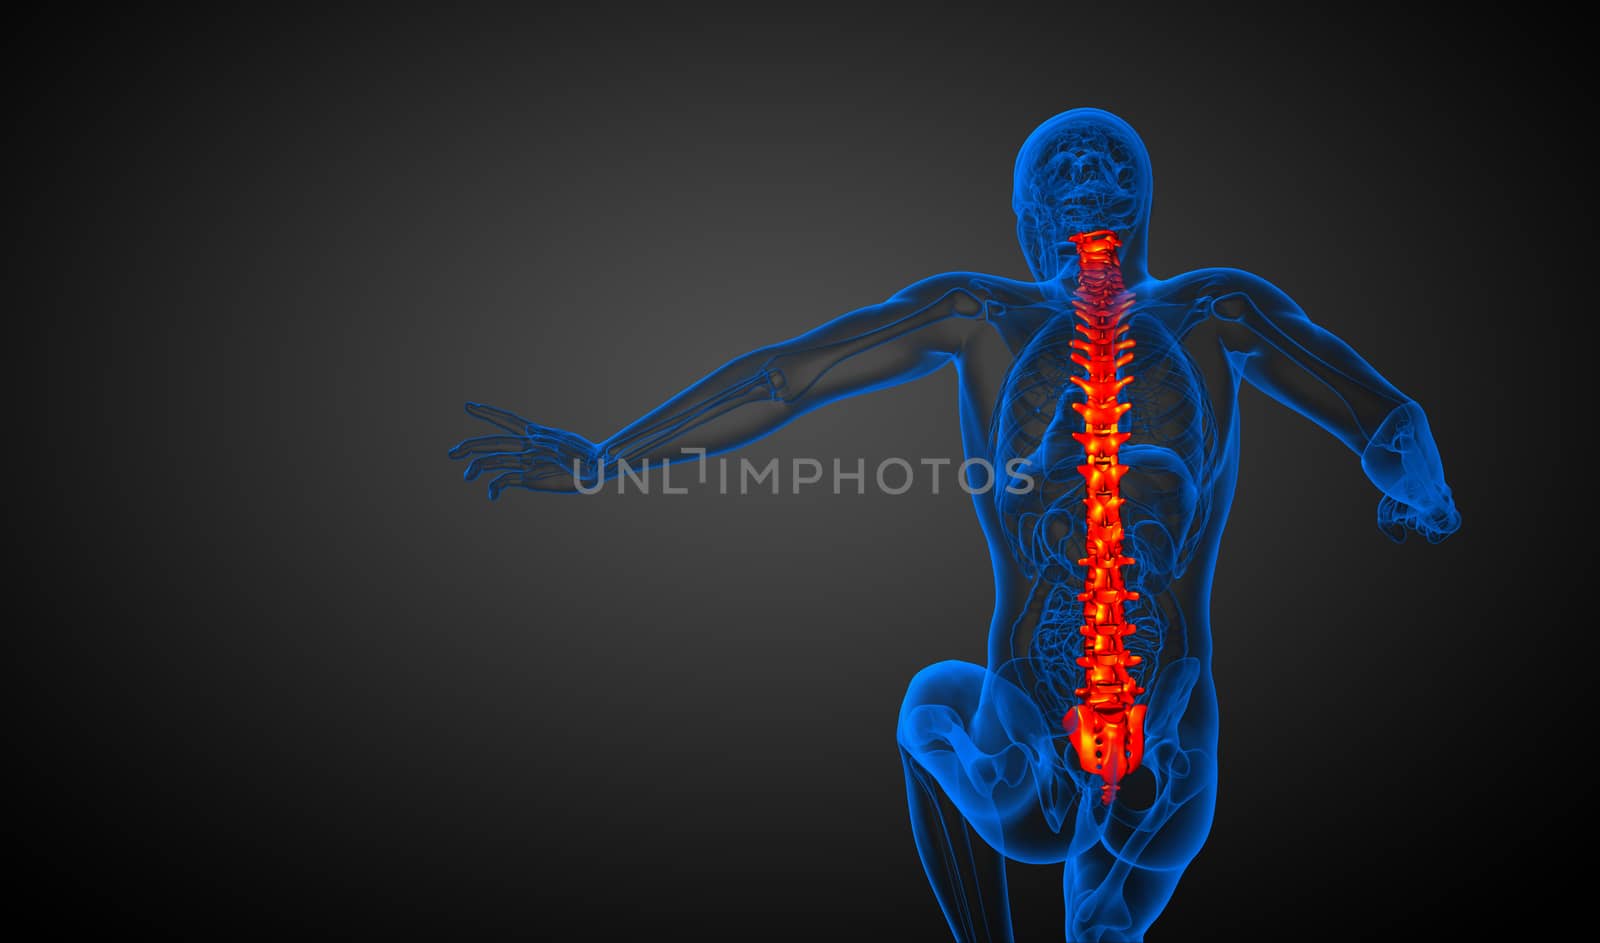 3d render medical illustration of the human spine - back view